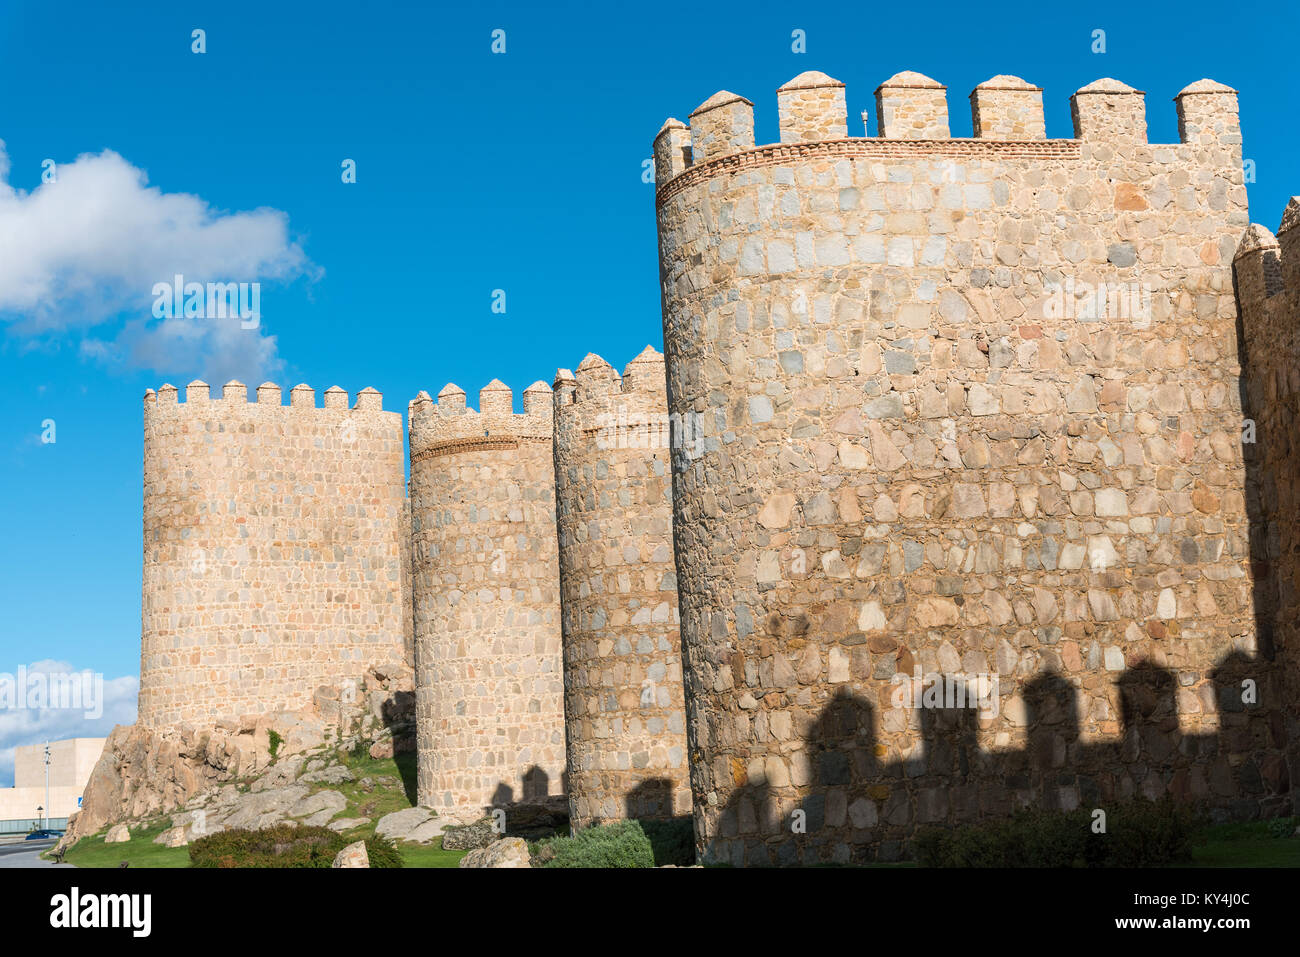 La ville médiévale d'Avila en Espagne Banque D'Images